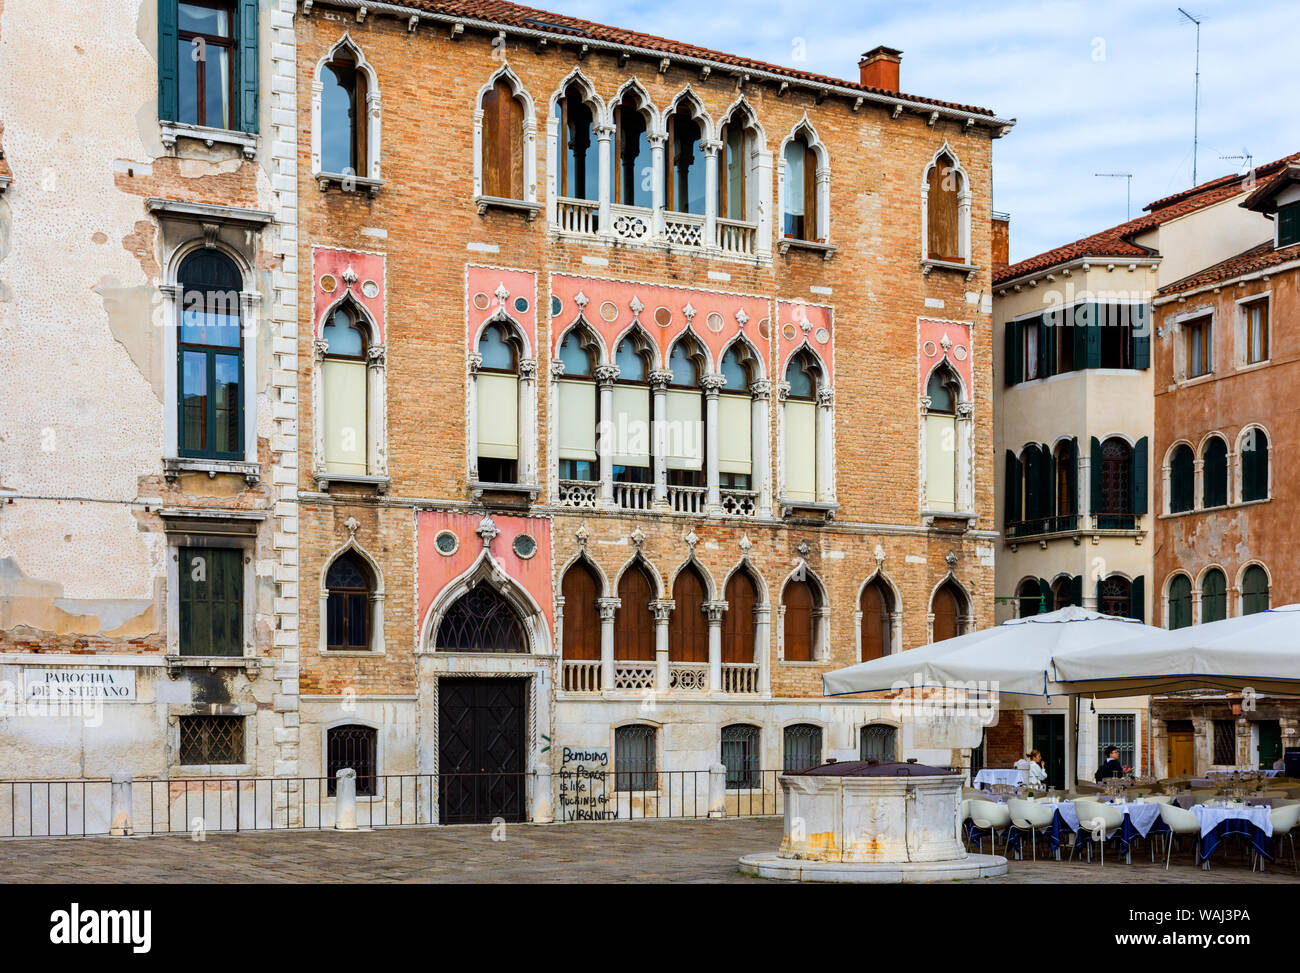 Dans les bâtiments de la place Campo Sant'Angelo, Venise, Italie Banque D'Images